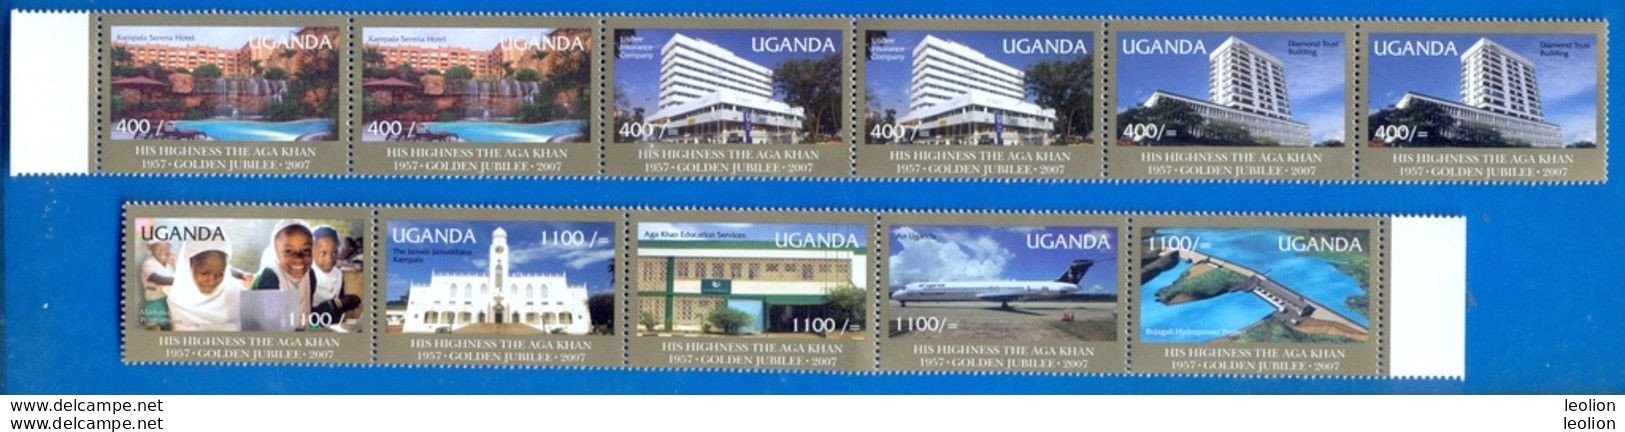 UGANDA Stamps Aga Khan 50th Anniversary Coronation 2008 Se-tenant MNH OUGANDA - Ouganda (1962-...)